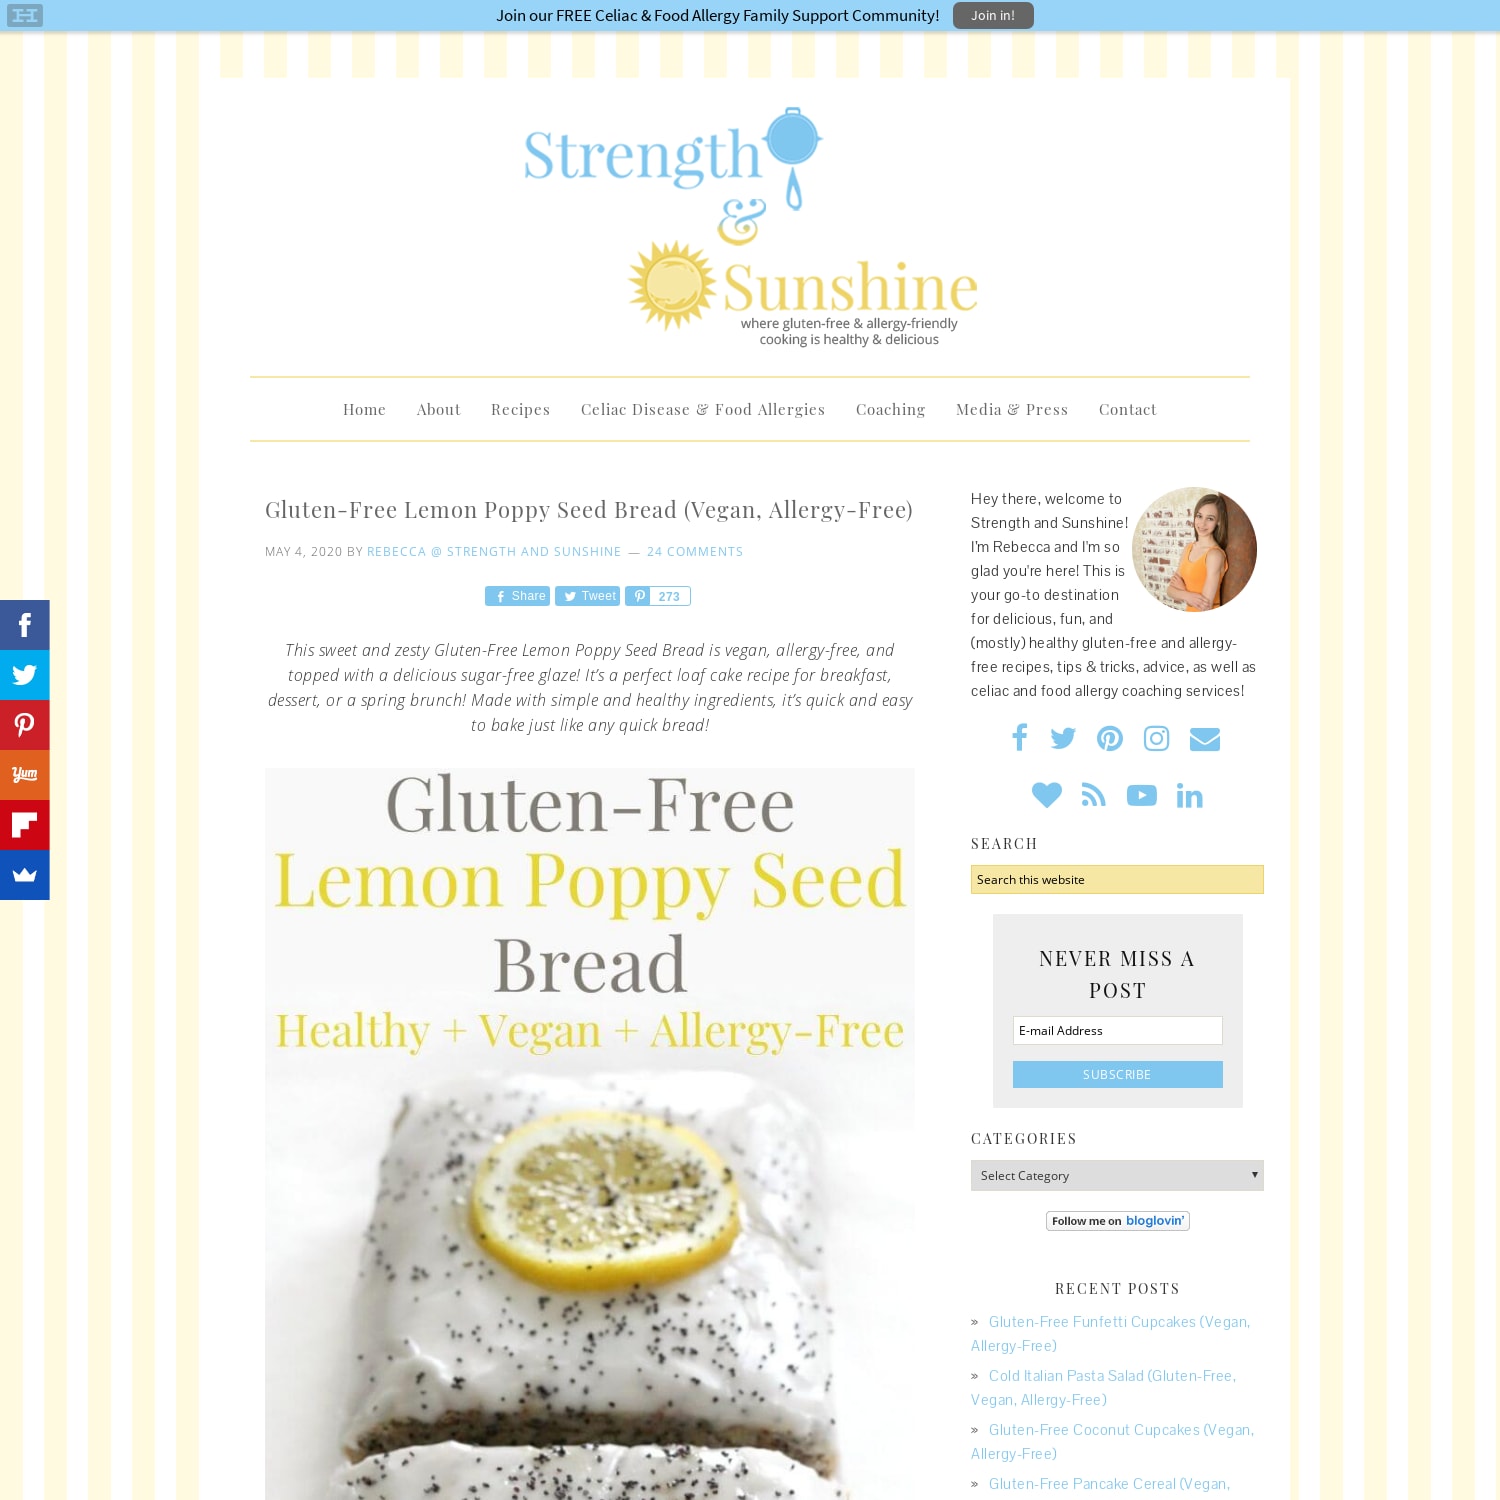 Gluten-Free Lemon Poppy Seed Bread (Vegan, Allergy-Free)